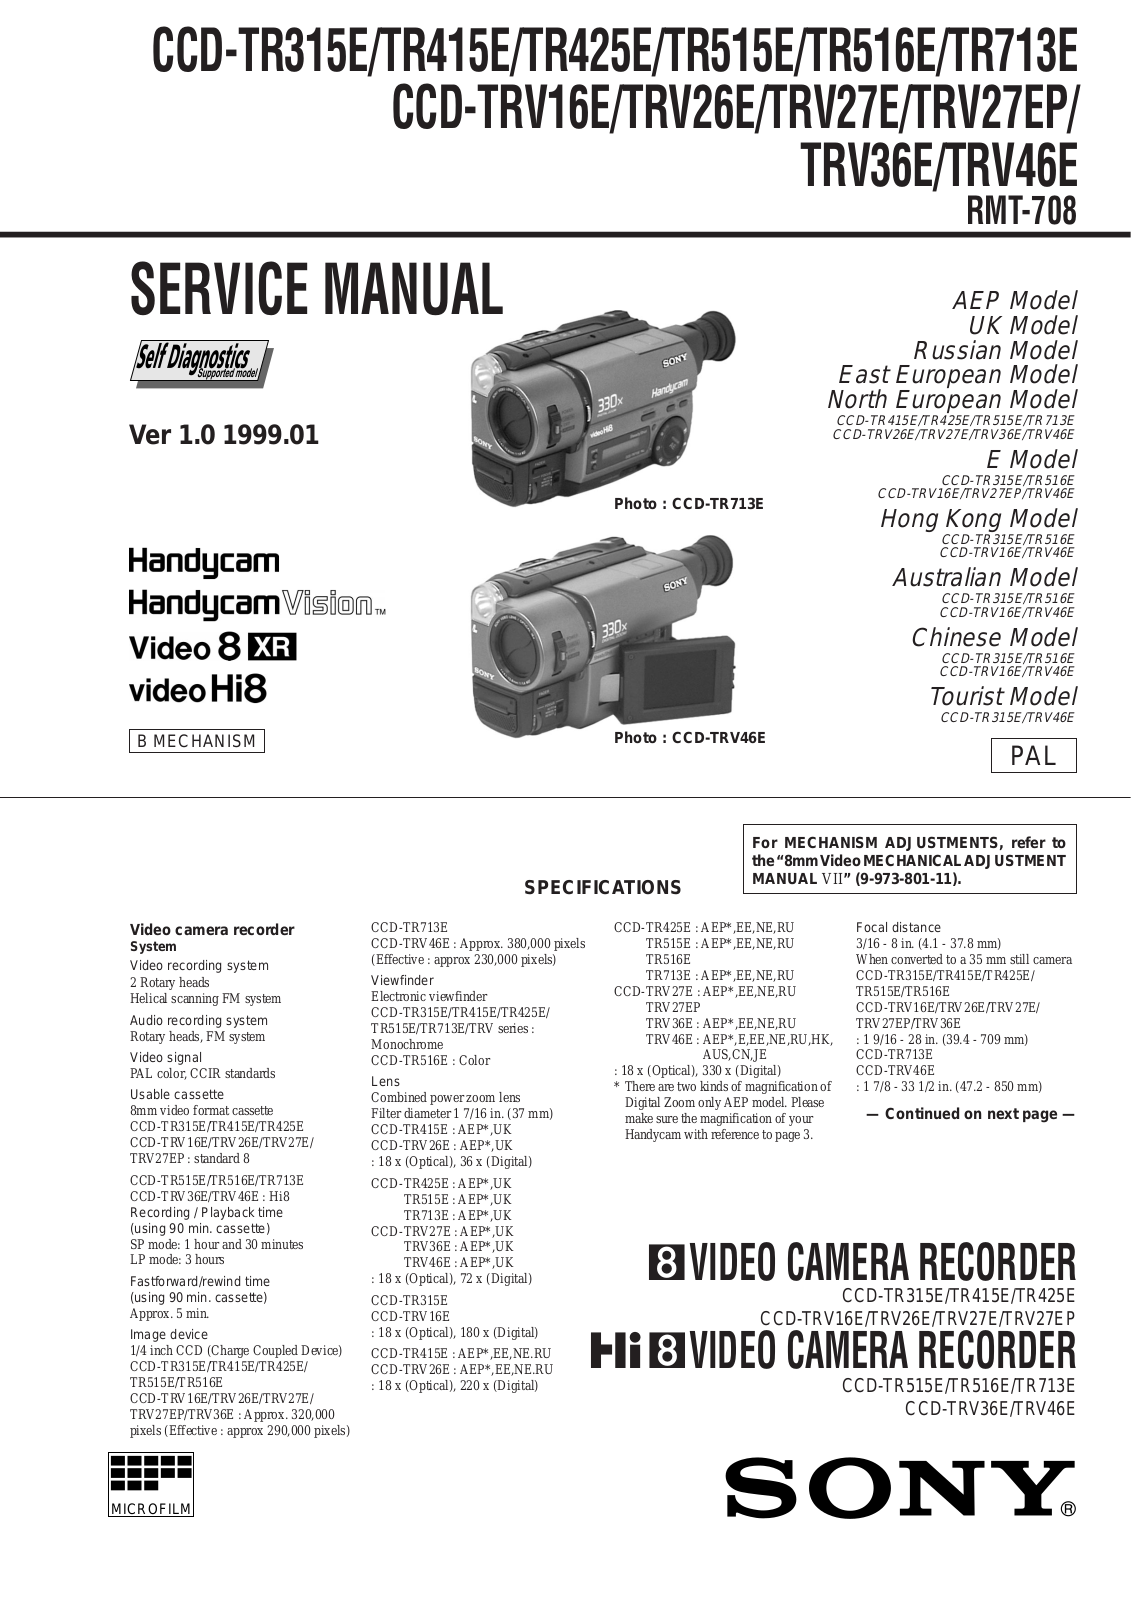 Sony CCD-TRV27EP, CCD-TR713E, CCD-TRV16E, CCD-TR516E, CCD-TR425E Service Manual